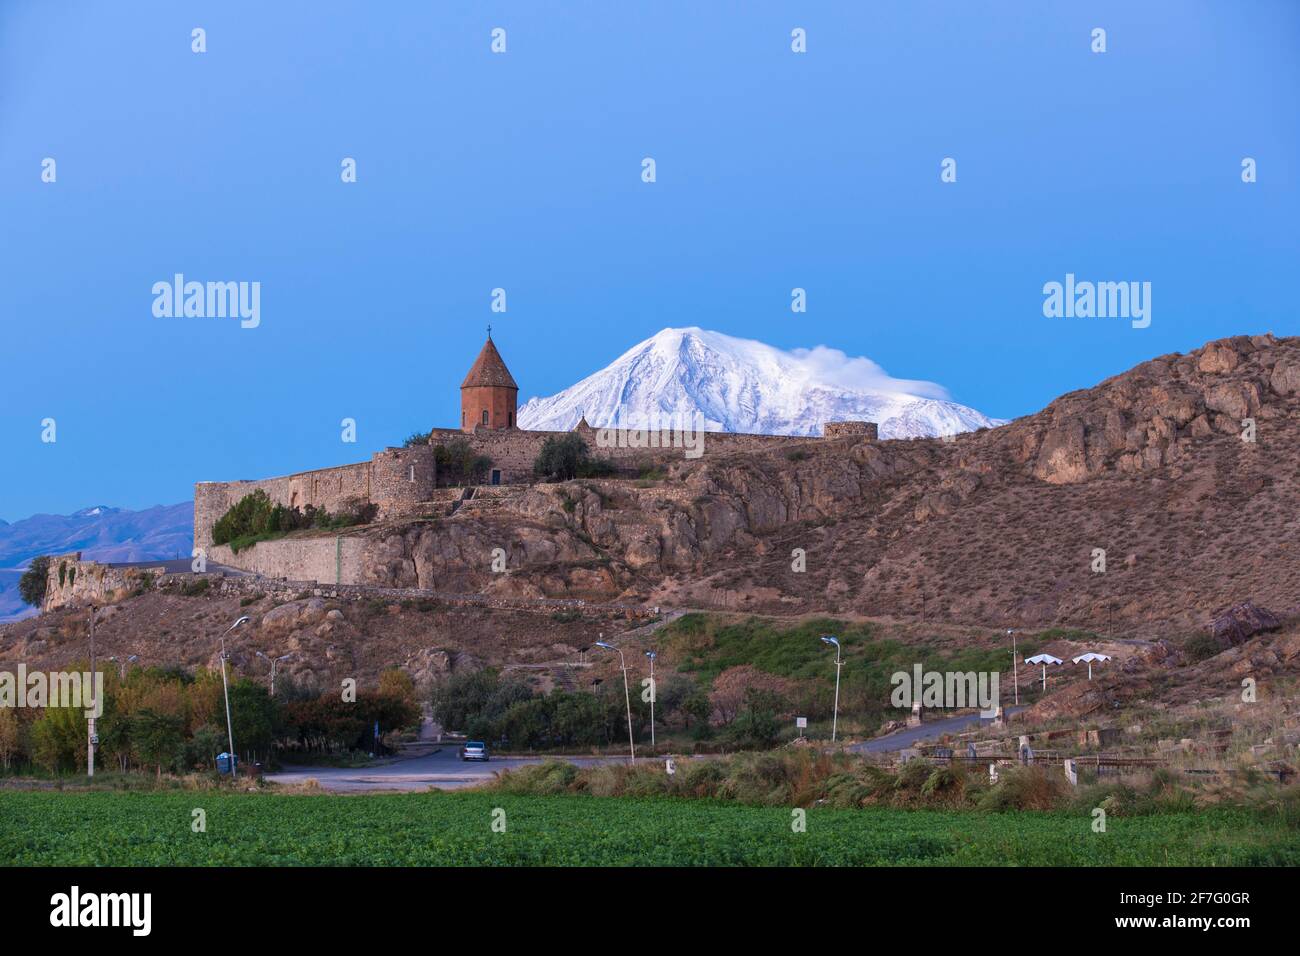 Armenia, Ereván, la llanura de Ararat, Khor Virap monasterio de la Iglesia Apostólica Armenia, al pie del monte Ararat Foto de stock